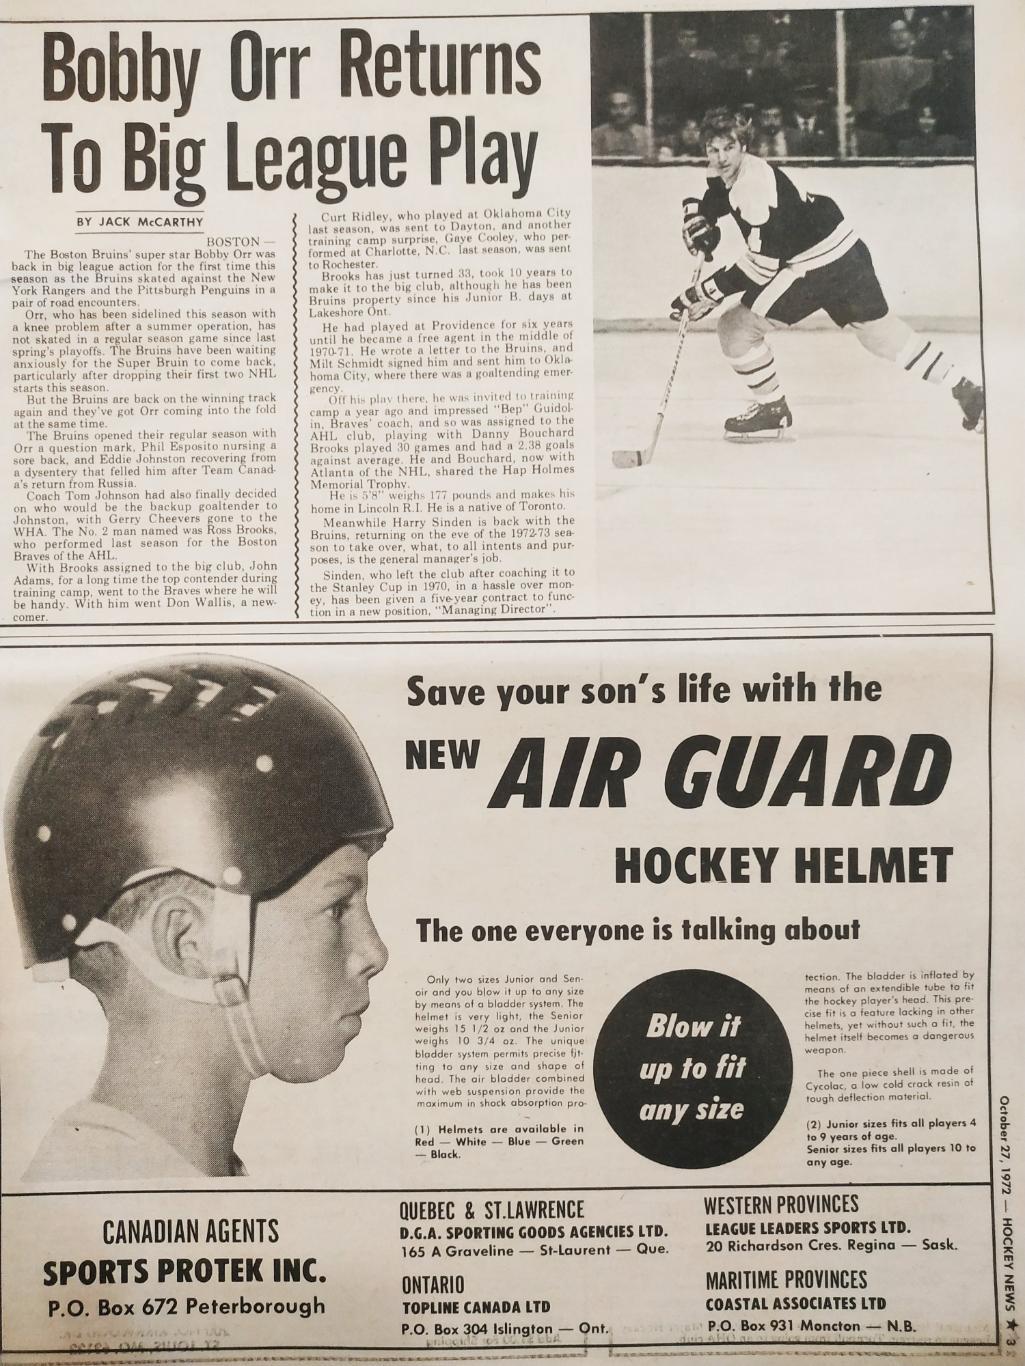 ХОККЕЙ ЖУРНАЛ ЕЖЕНЕДЕЛЬНИК НХЛ НОВОСТИ ХОККЕЯ OCT.27 1972 NHL THE HOCKEY NEWS 2